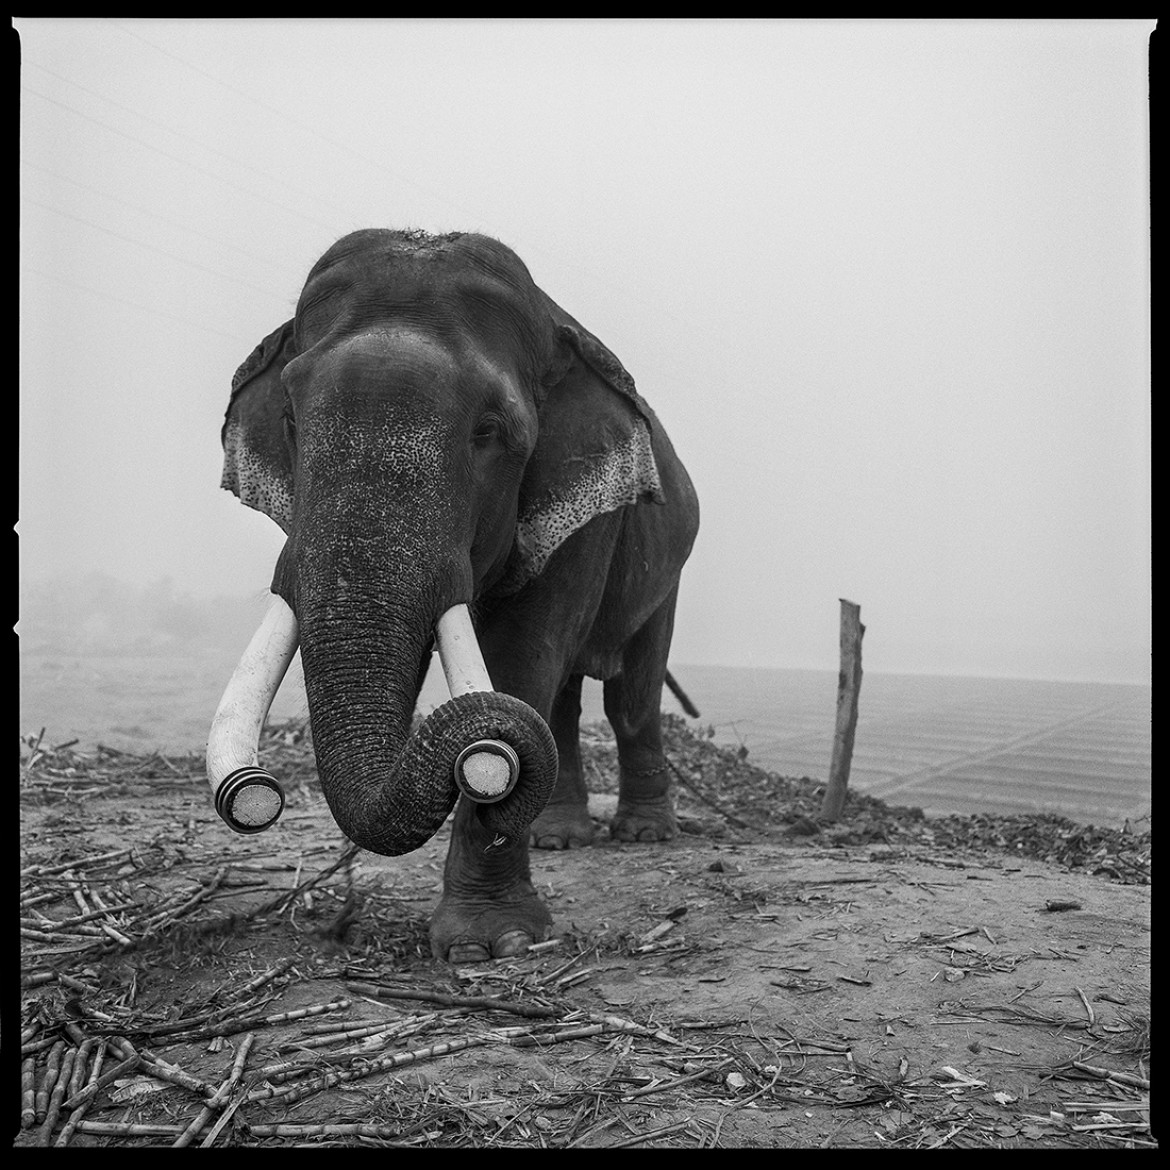 ARUN NANGLA - The elephant in the room - II miejsce w kategorii Photojournalism (zdjęcie z serii)